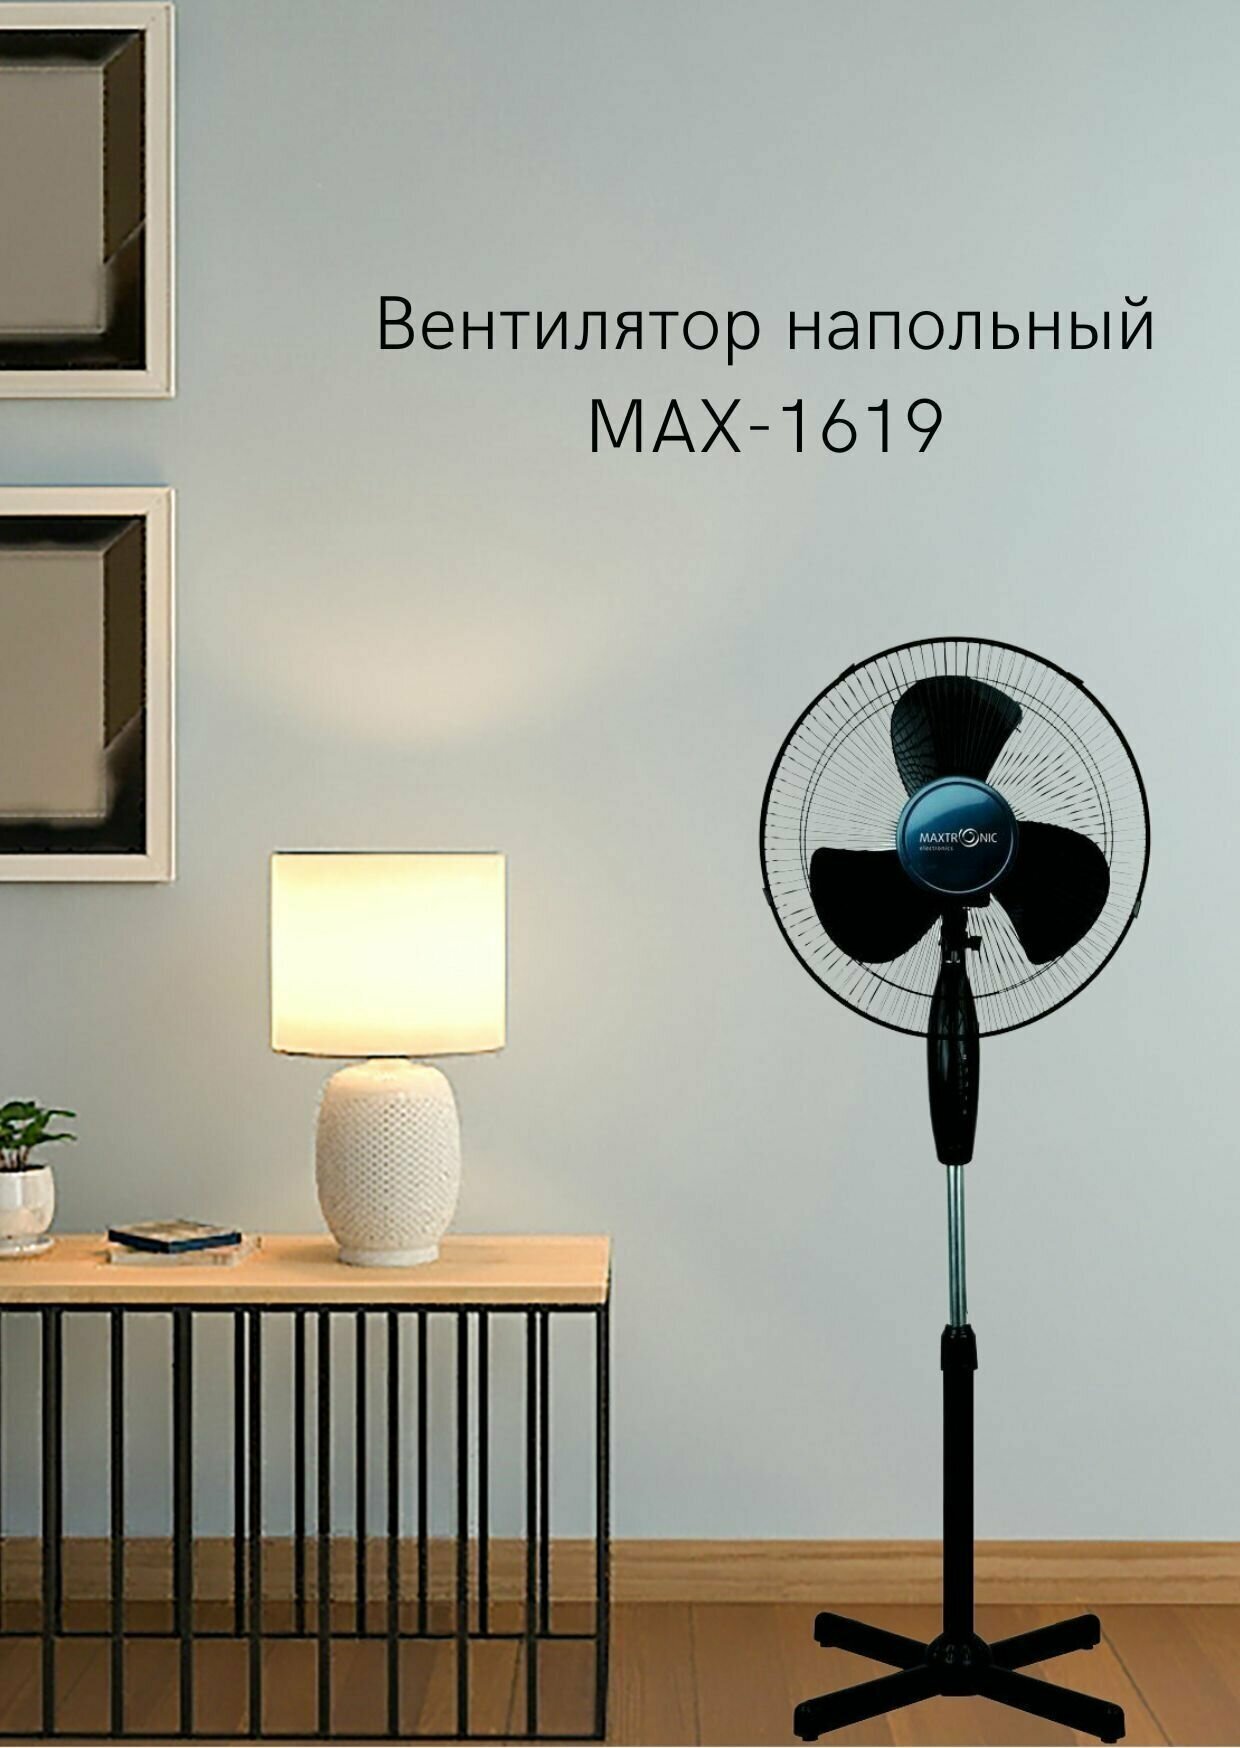 Вентилятор maxtronic-1619-6